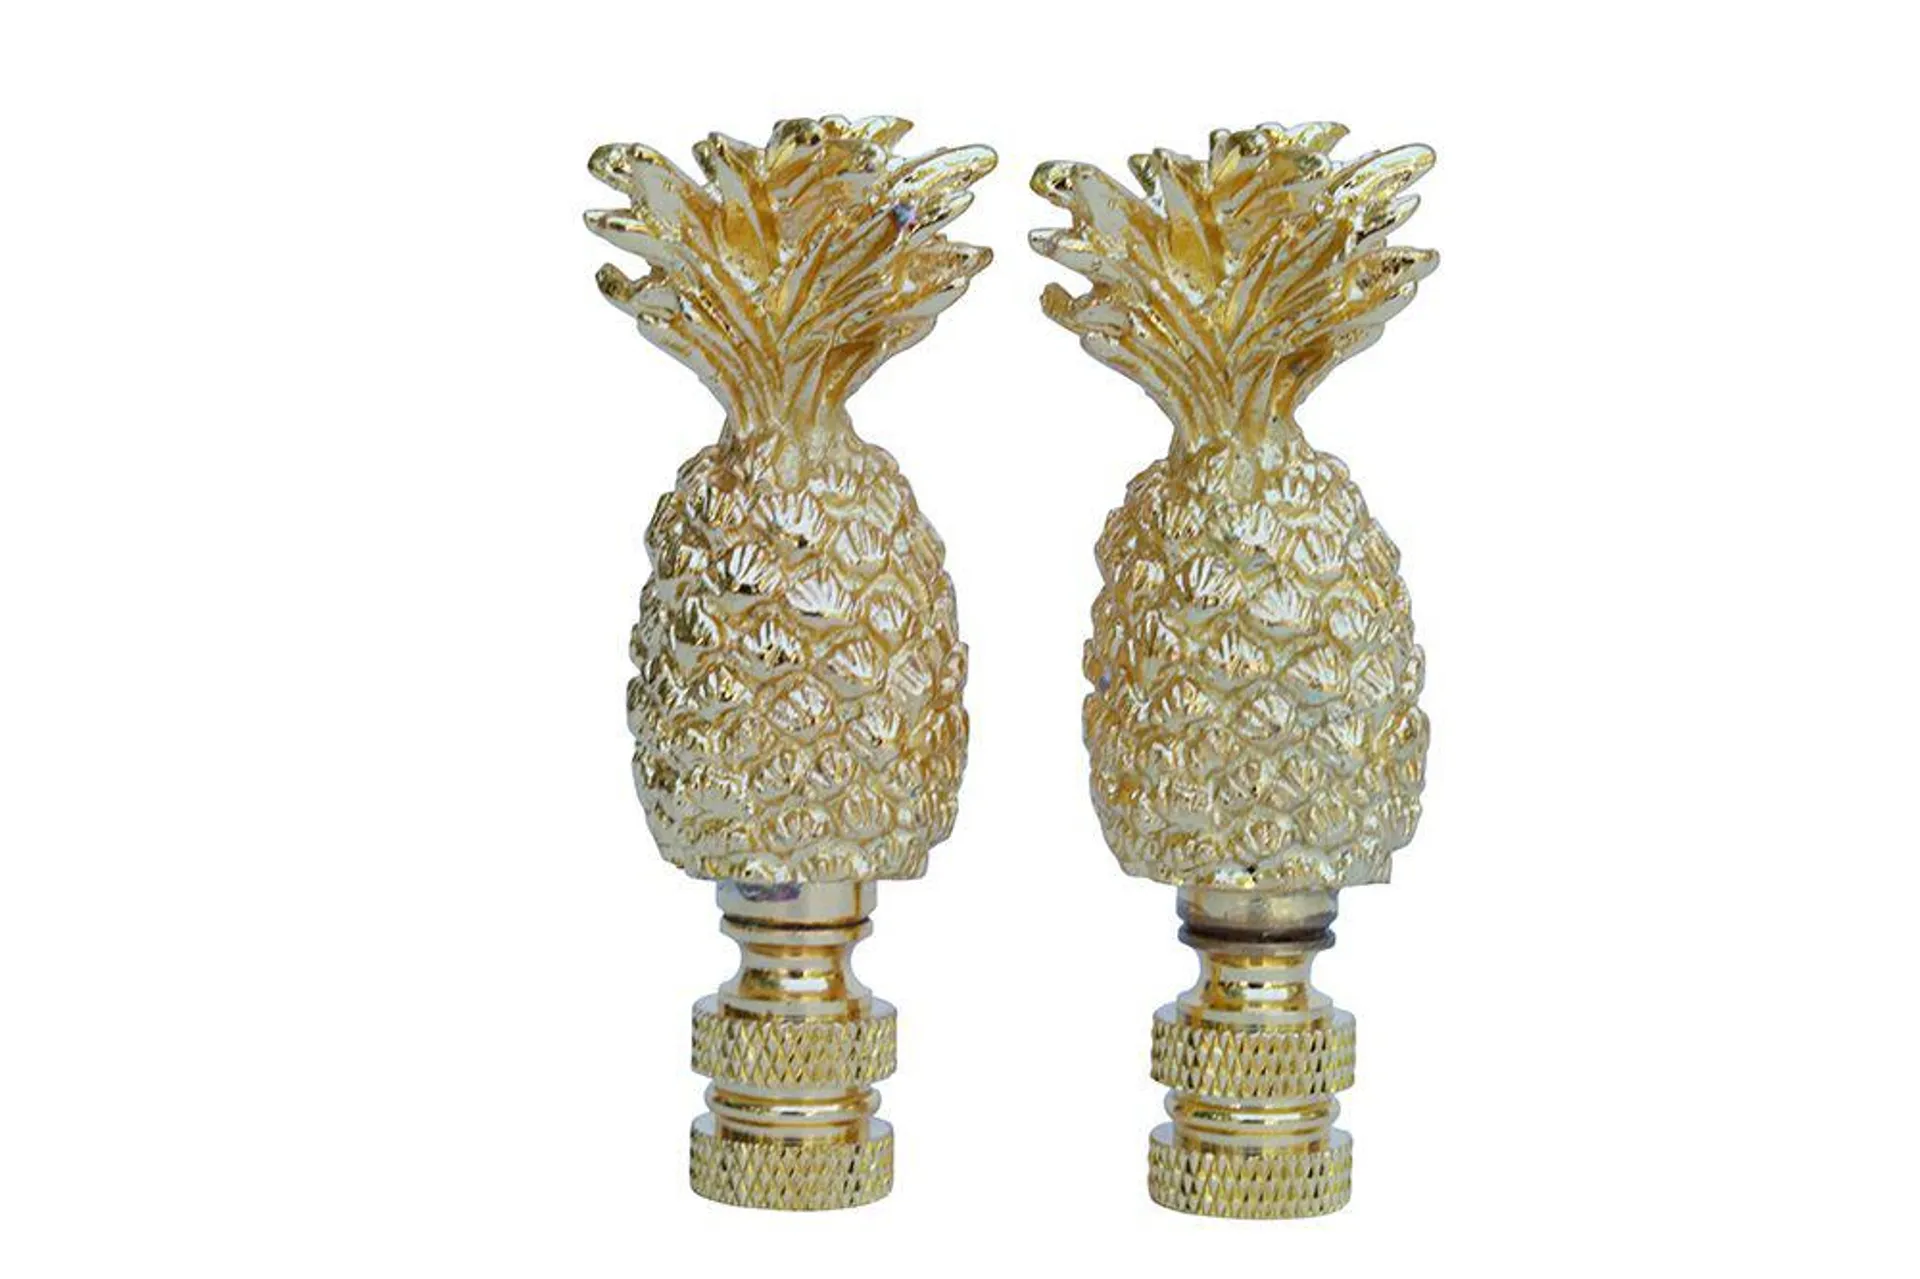 Pineapple Brass Lamp Finials - a Pair